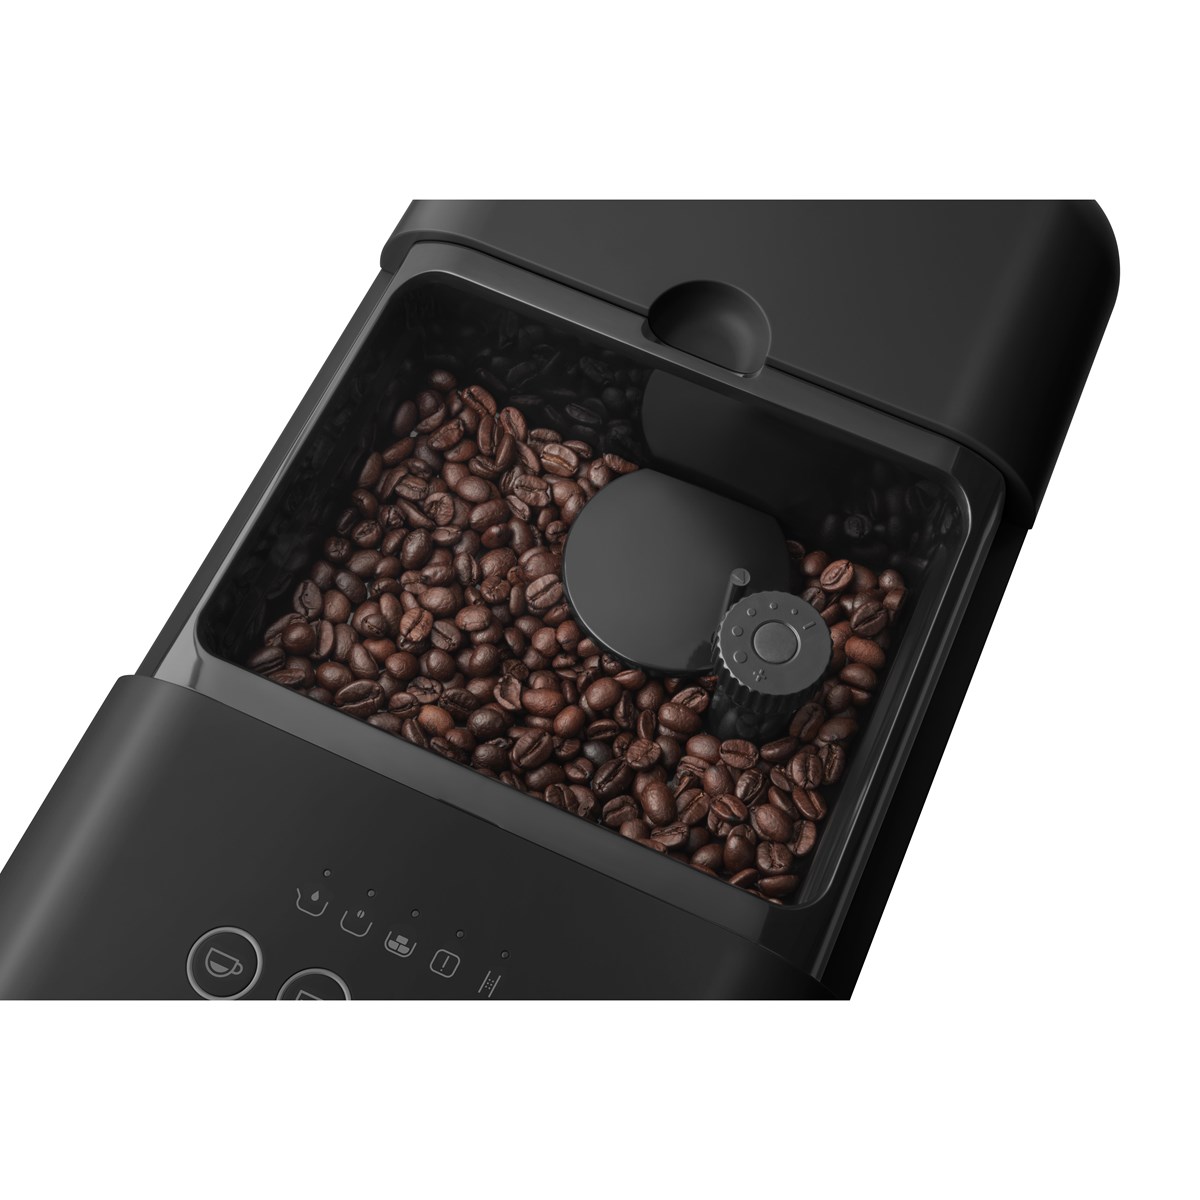 SMEG, kaffemaskin BCC01 svart